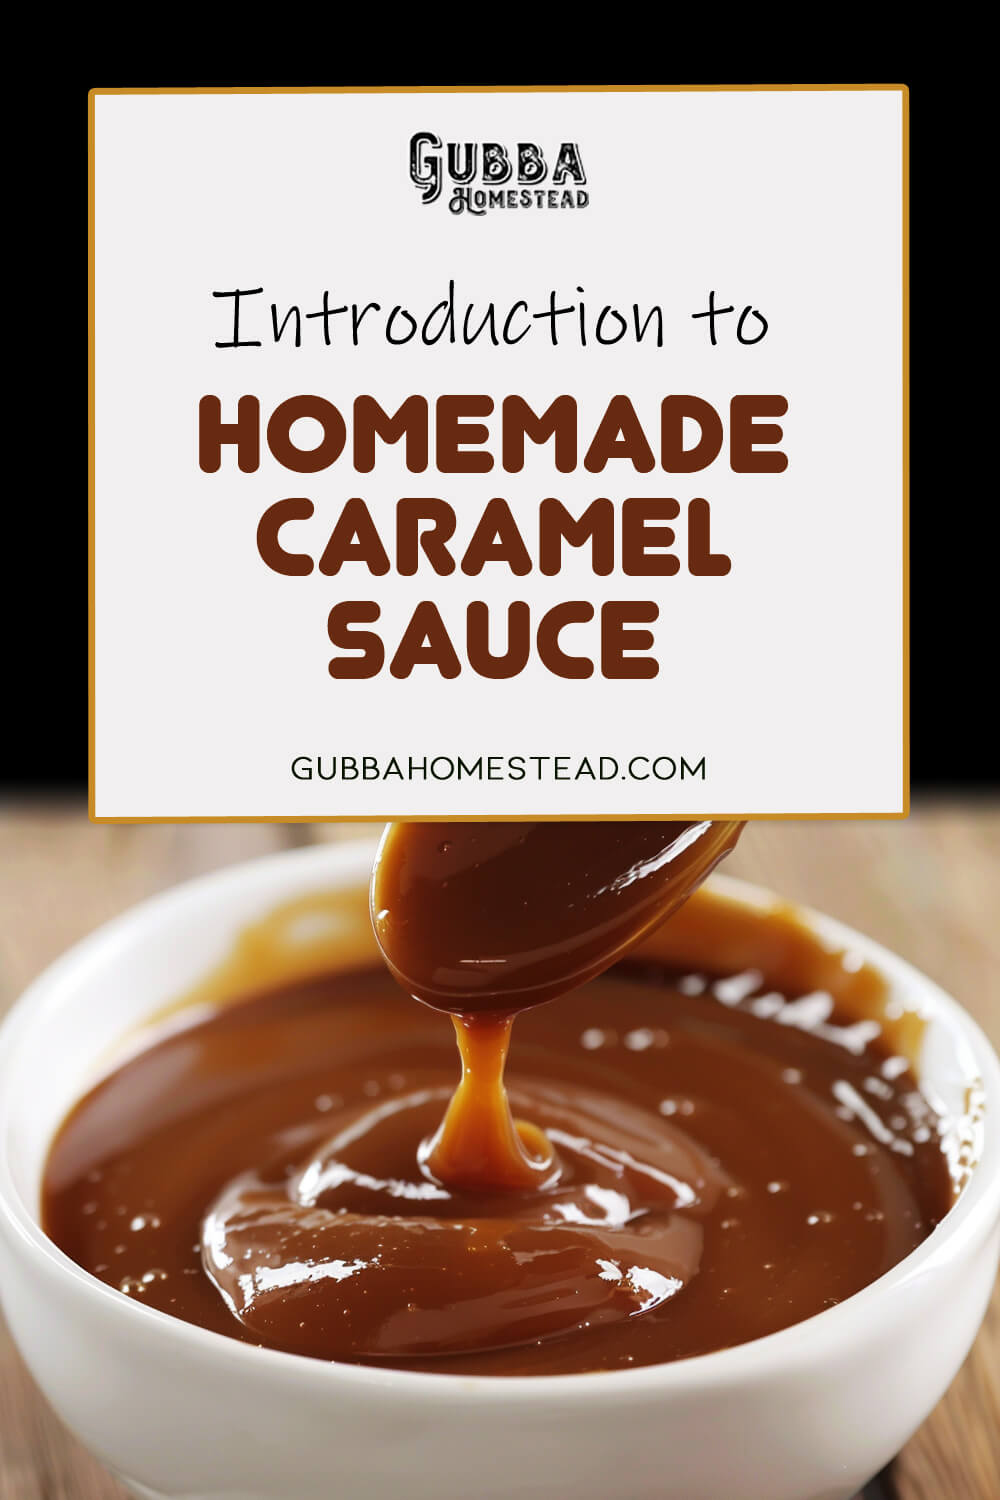 Introduction to Homemade Caramel Sauce